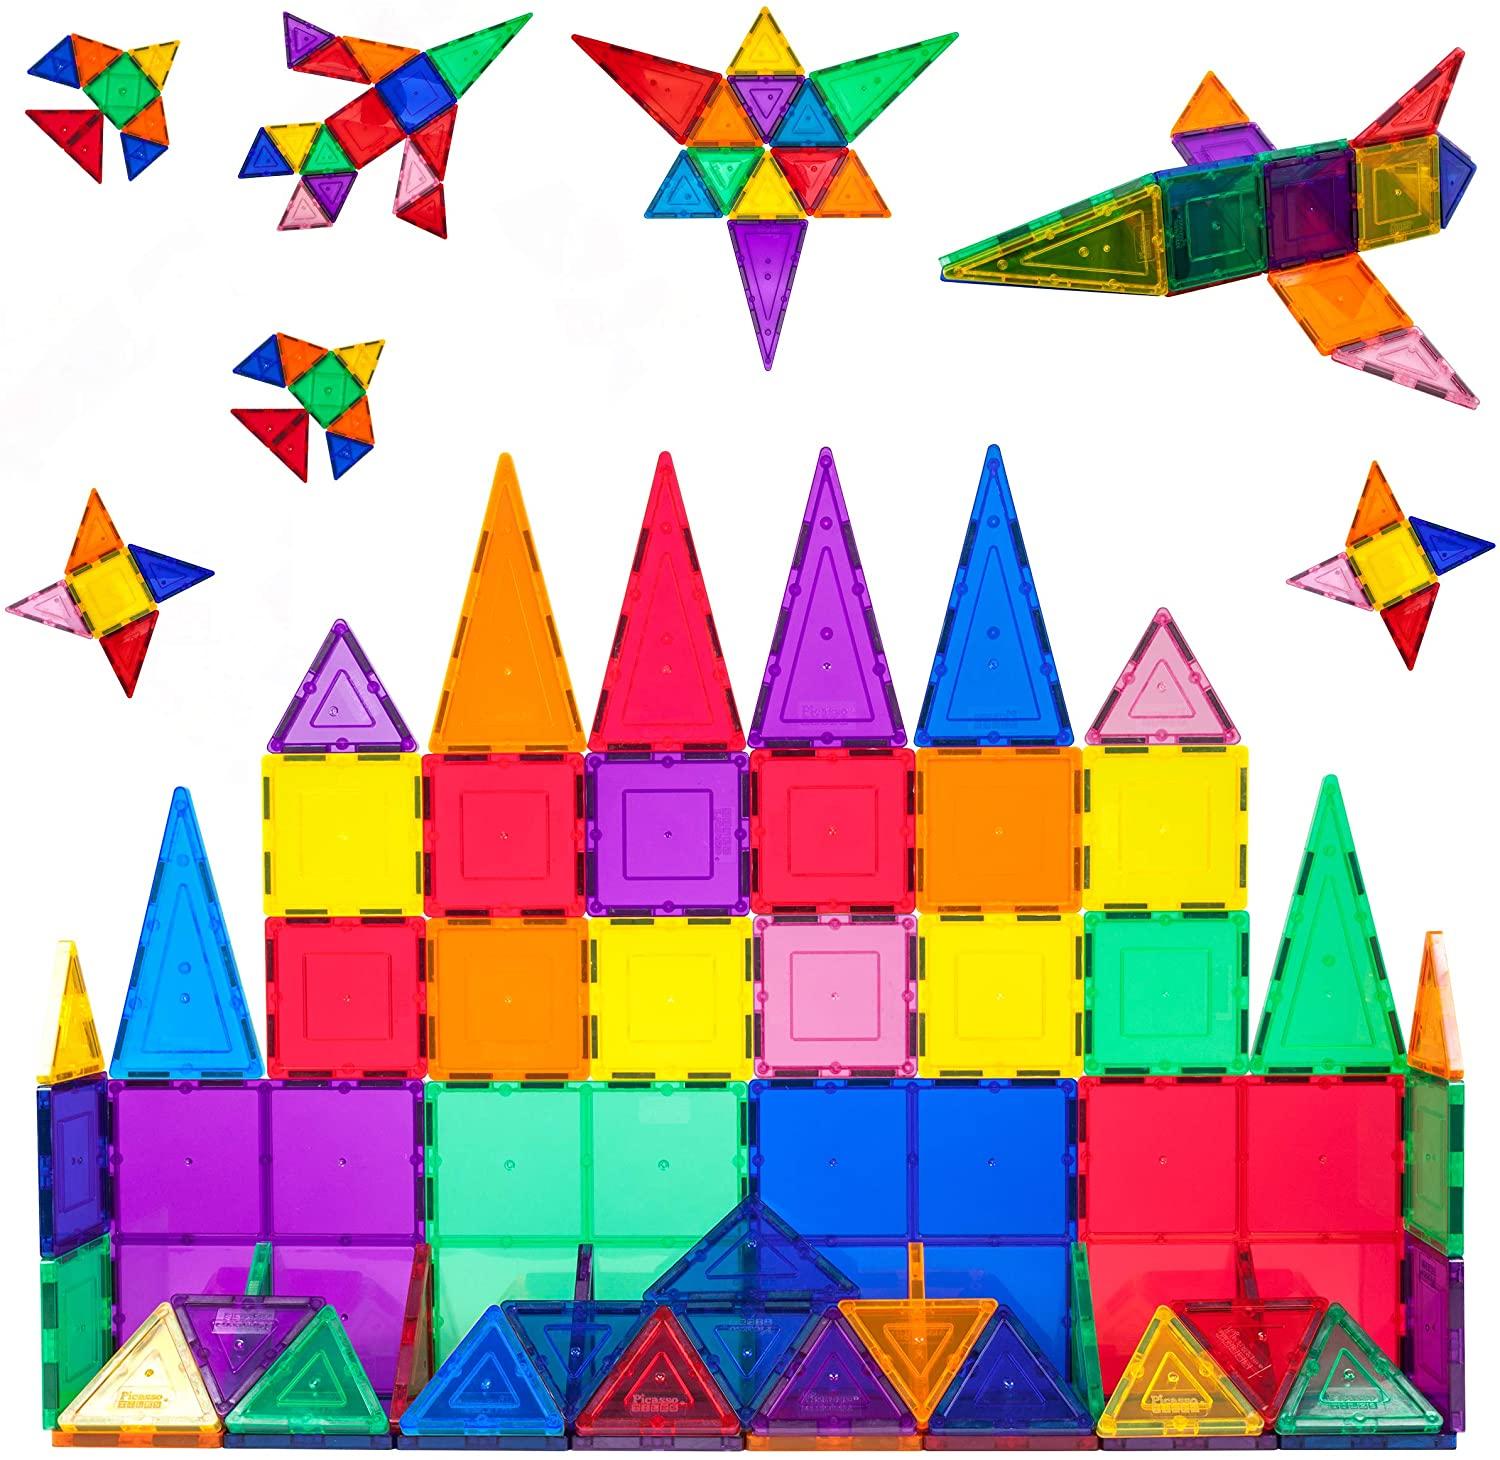 PicassoTiles 60 Piece Set Magnet Building Tiles for $21.59